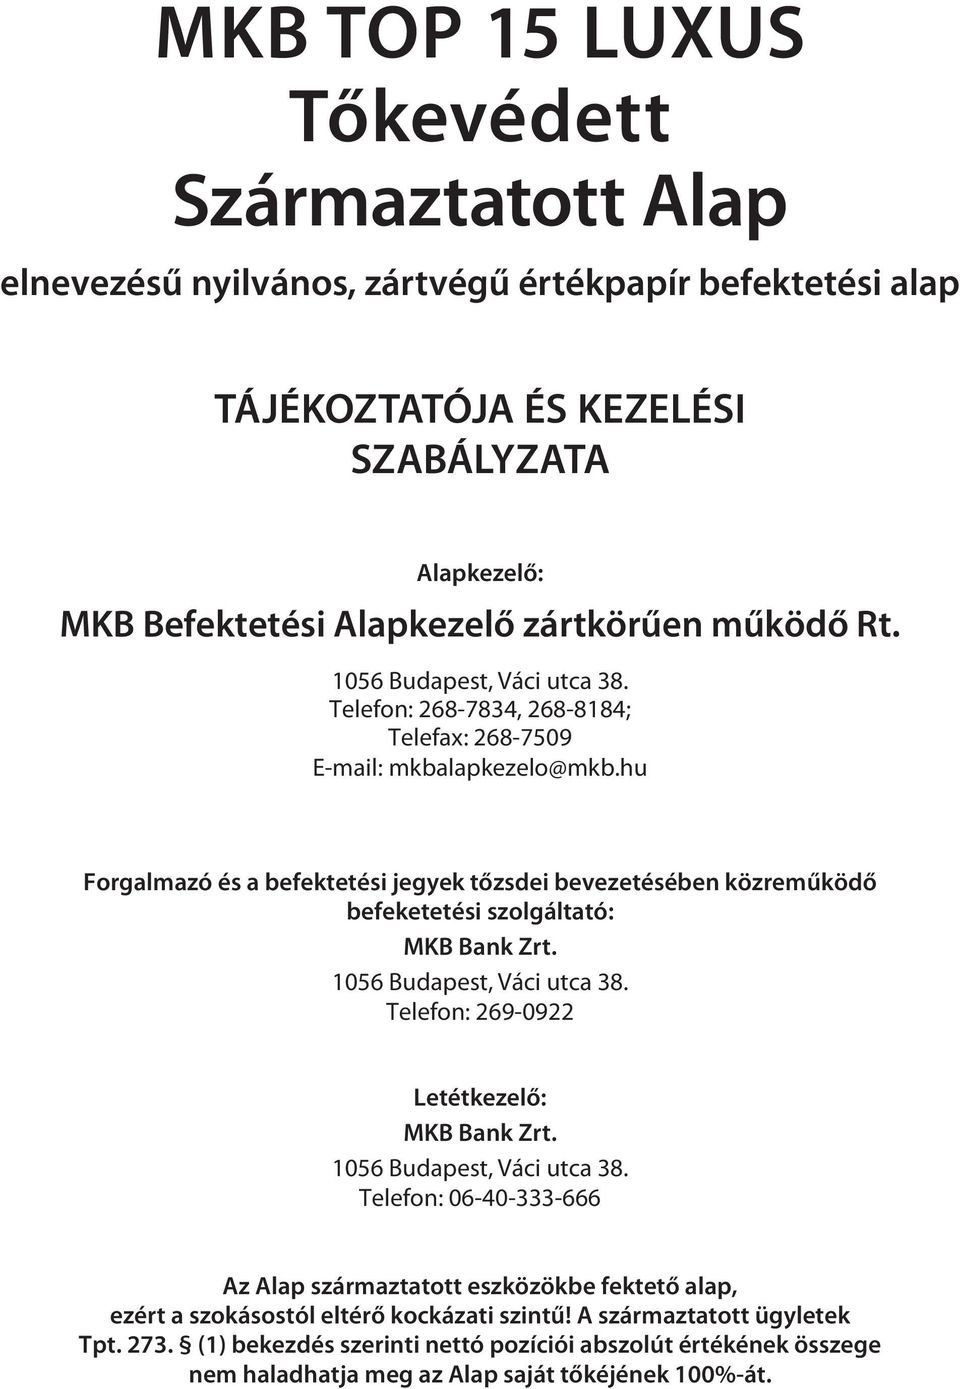 hu Forgalmazó és a befektetési jegyek tőzsdei bevezetésében közreműködő befeketetési szolgáltató: MKB Bank Zrt. 1056 Budapest, Váci utca 38. Telefon: 269-0922 Letétkezelő: MKB Bank Zrt.